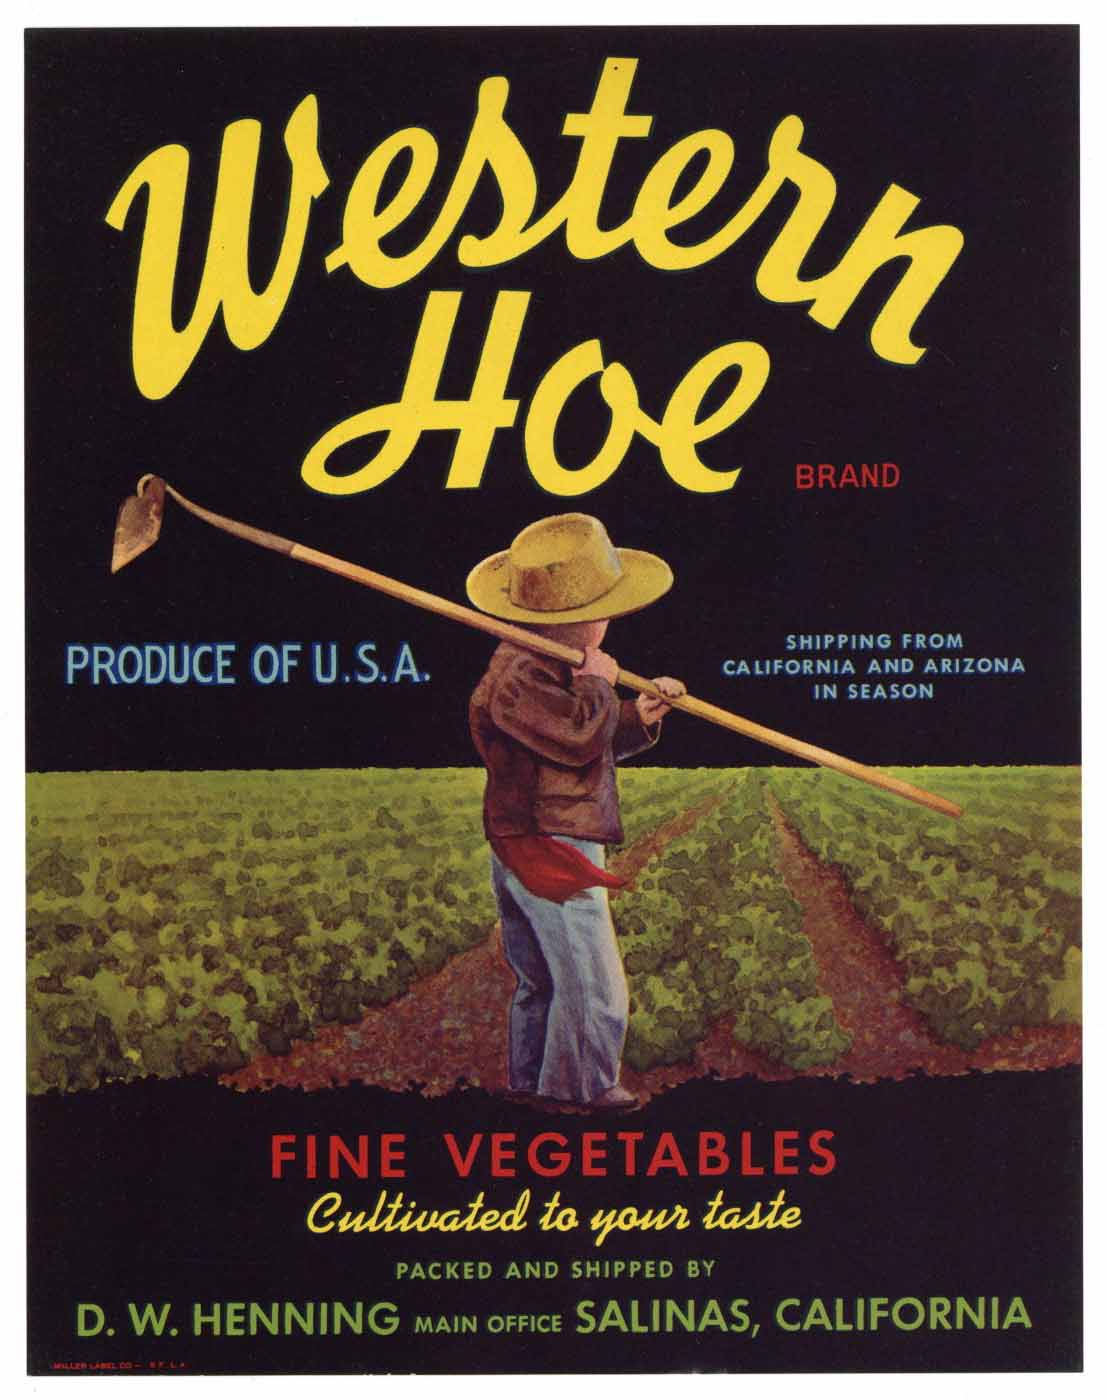 Western Hoe Brand Vintage Salinas Vegetable Crate Label